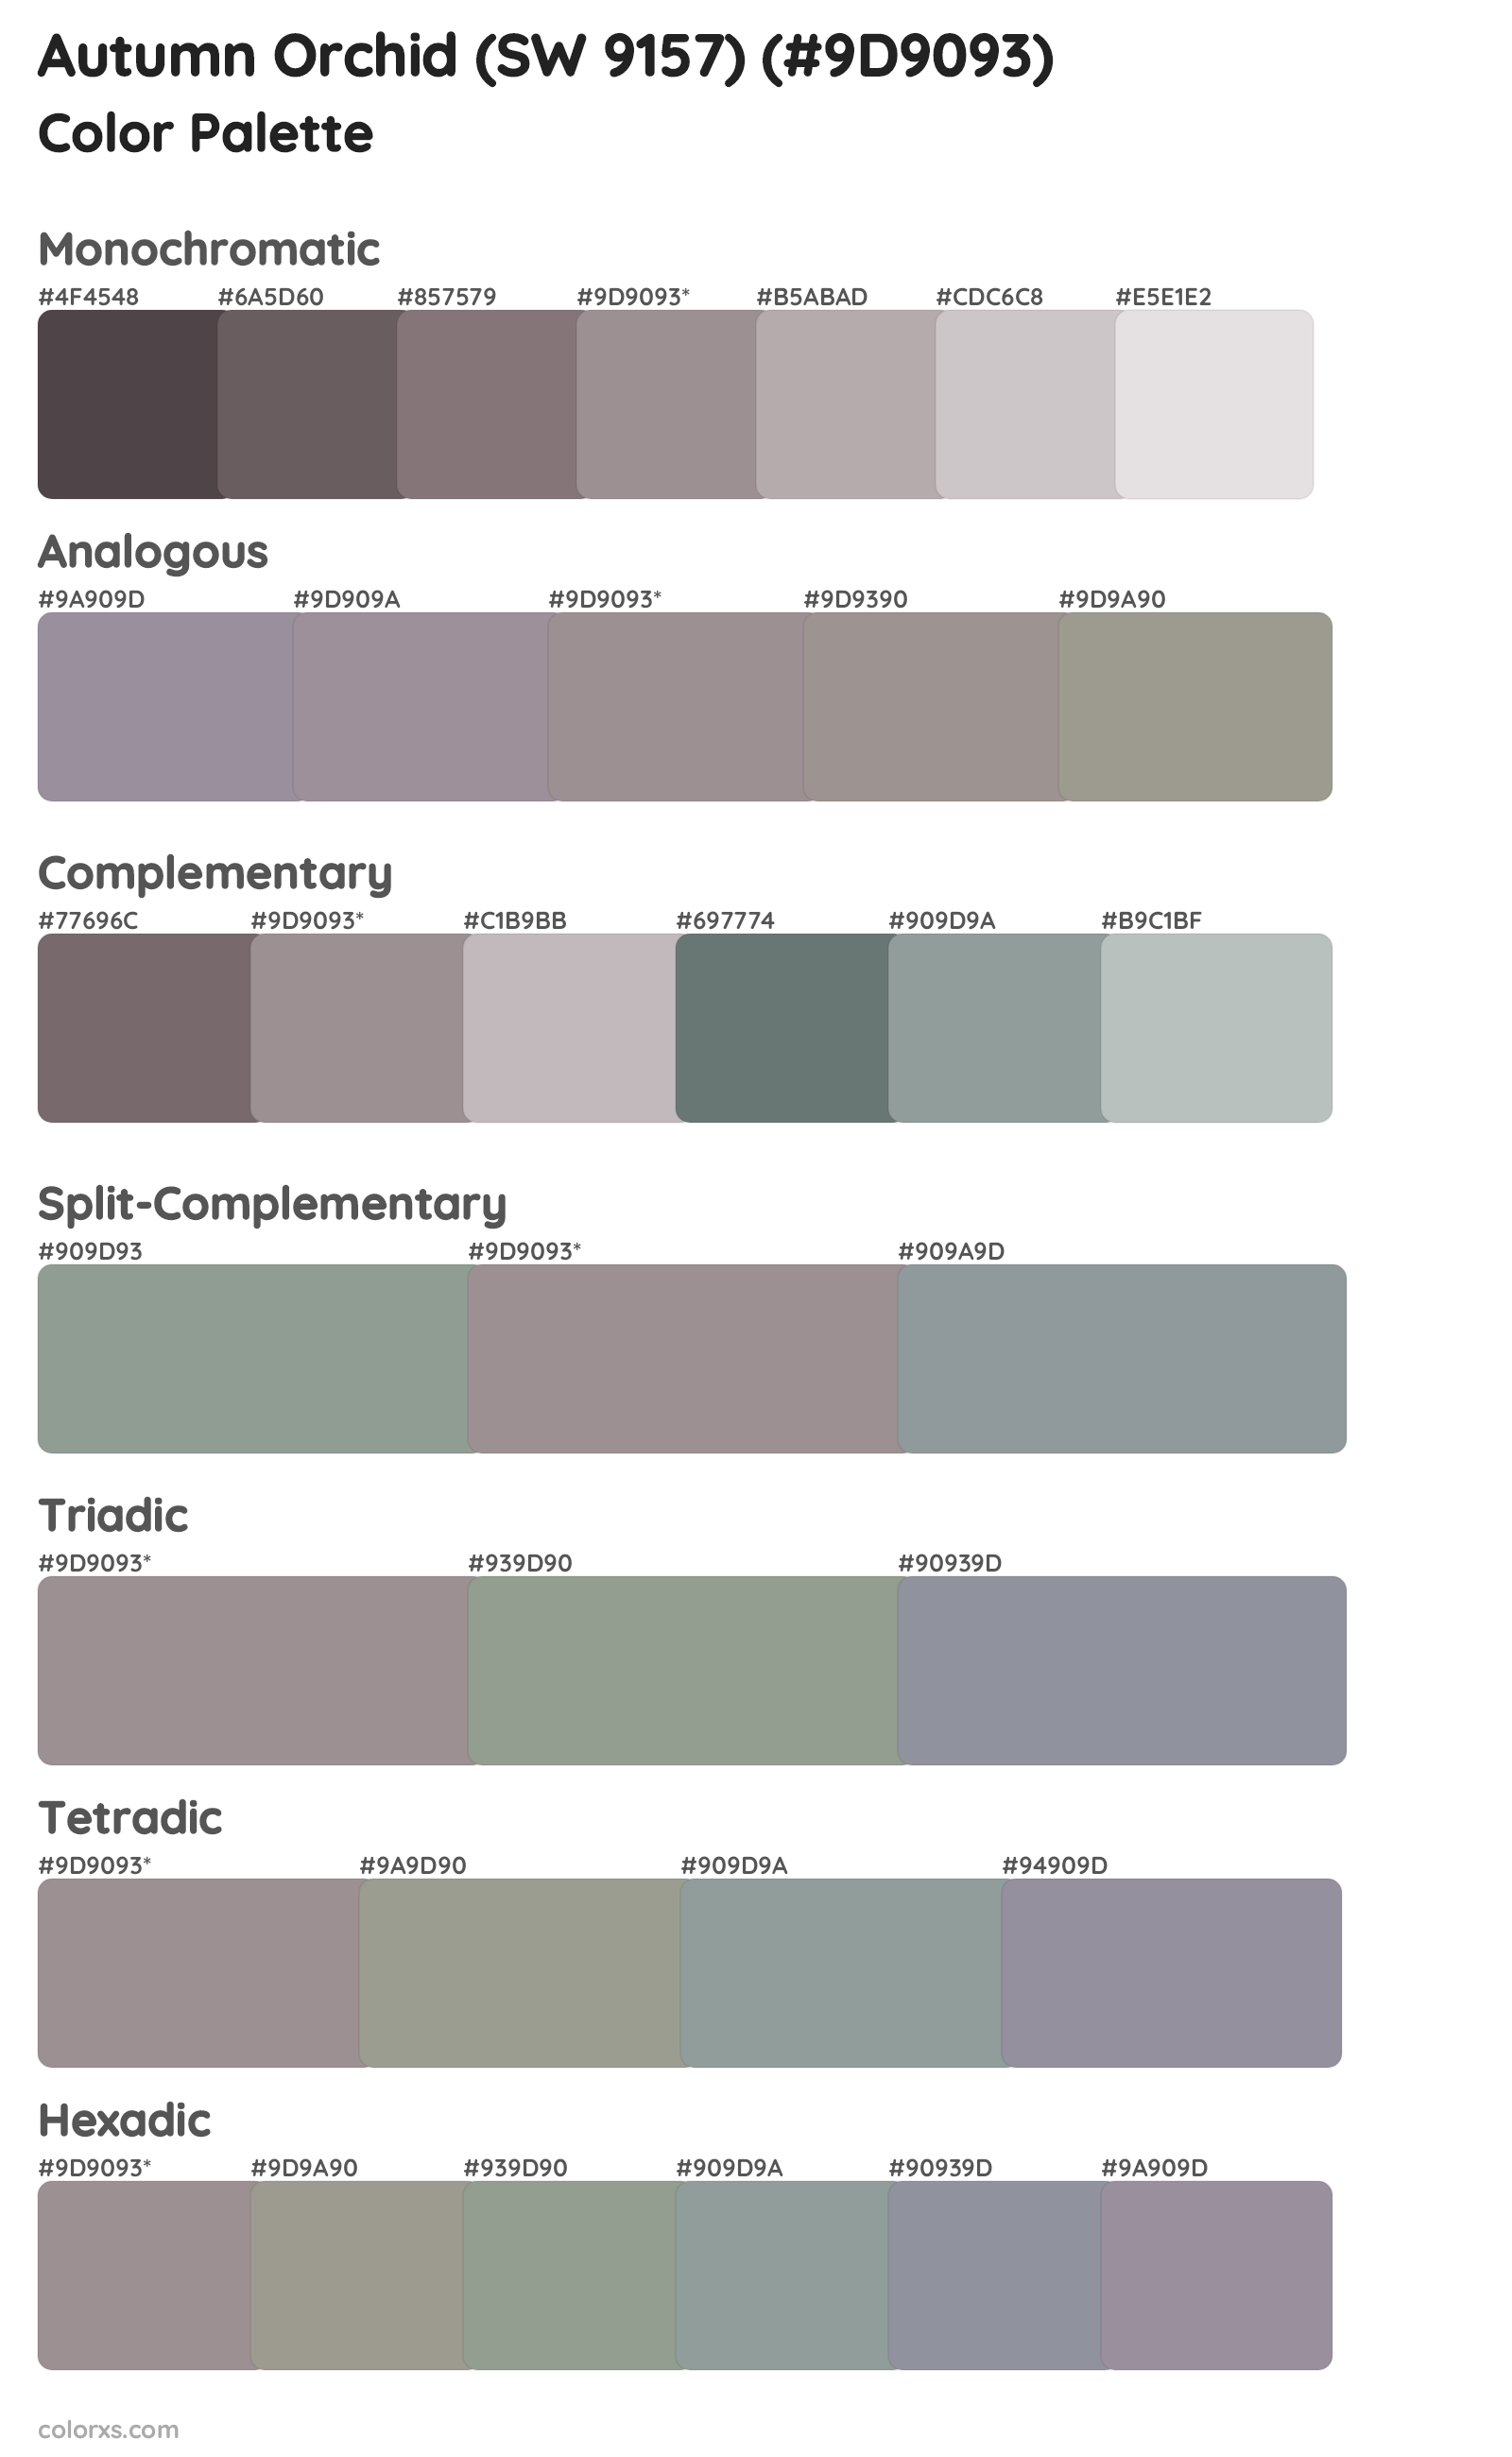 Autumn Orchid (SW 9157) Color Scheme Palettes